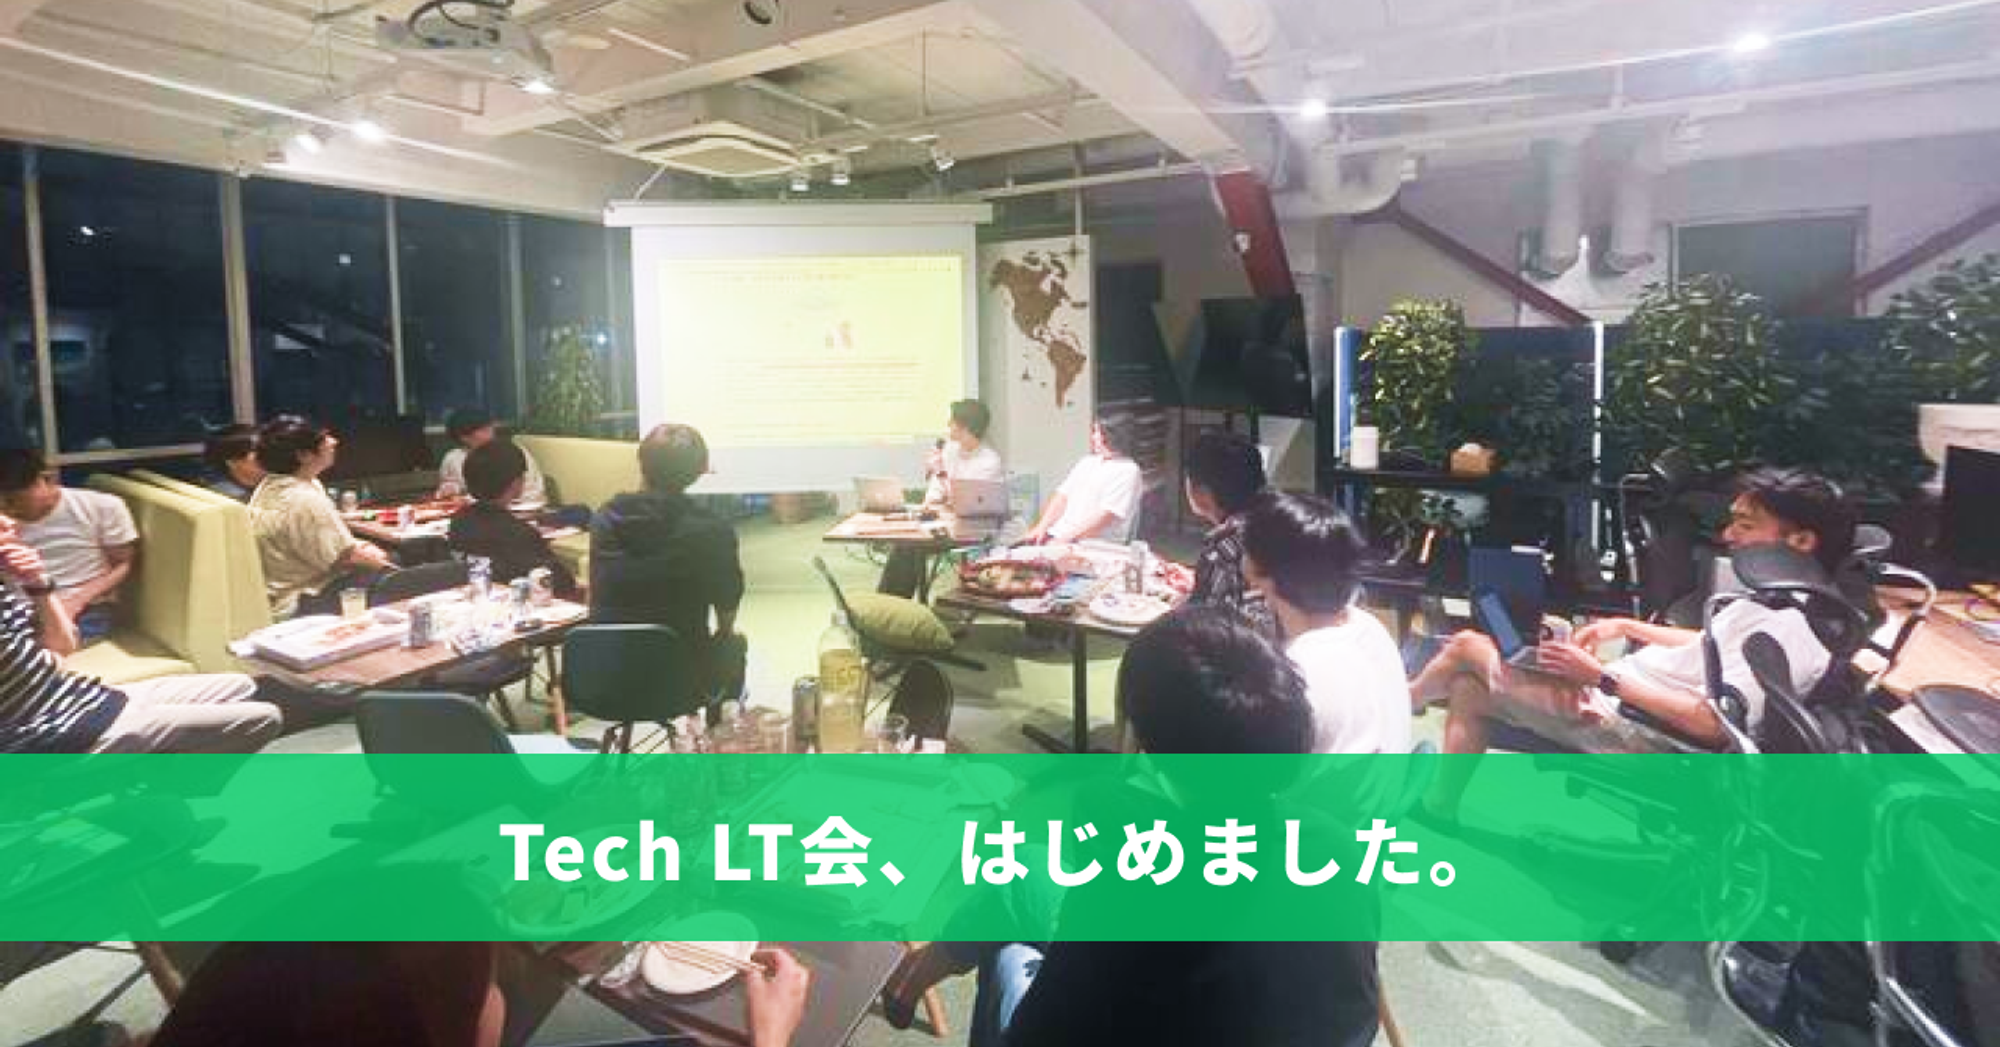 【イベントレポート】Tech LT会、はじめました。